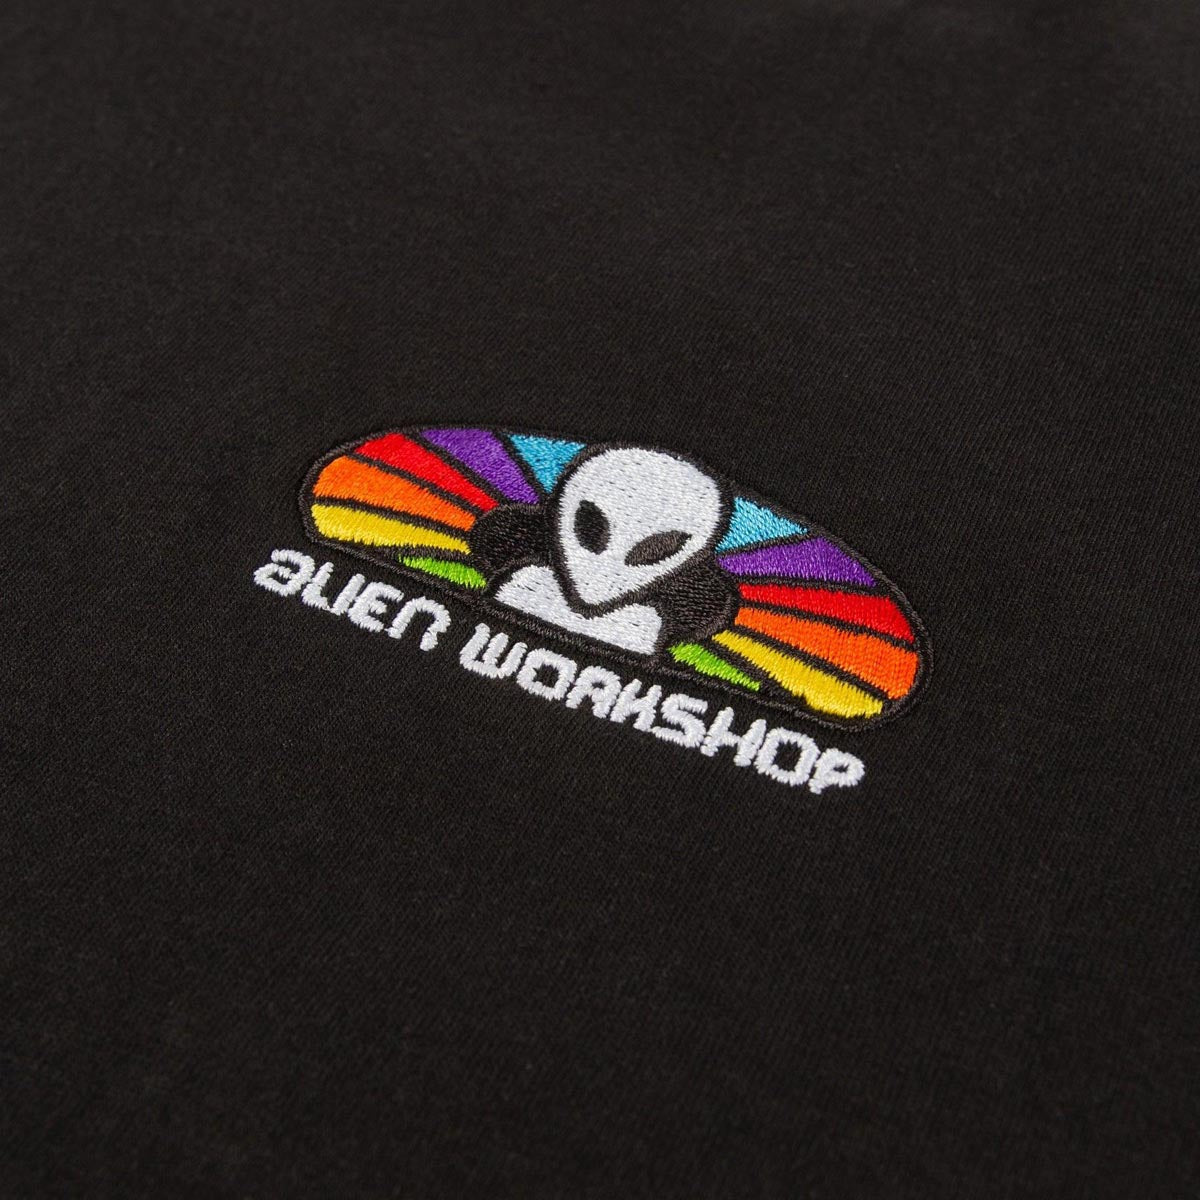 Alien Workshop Spectrum Embroidered Long Sleeve T-Shirt - Black image 2